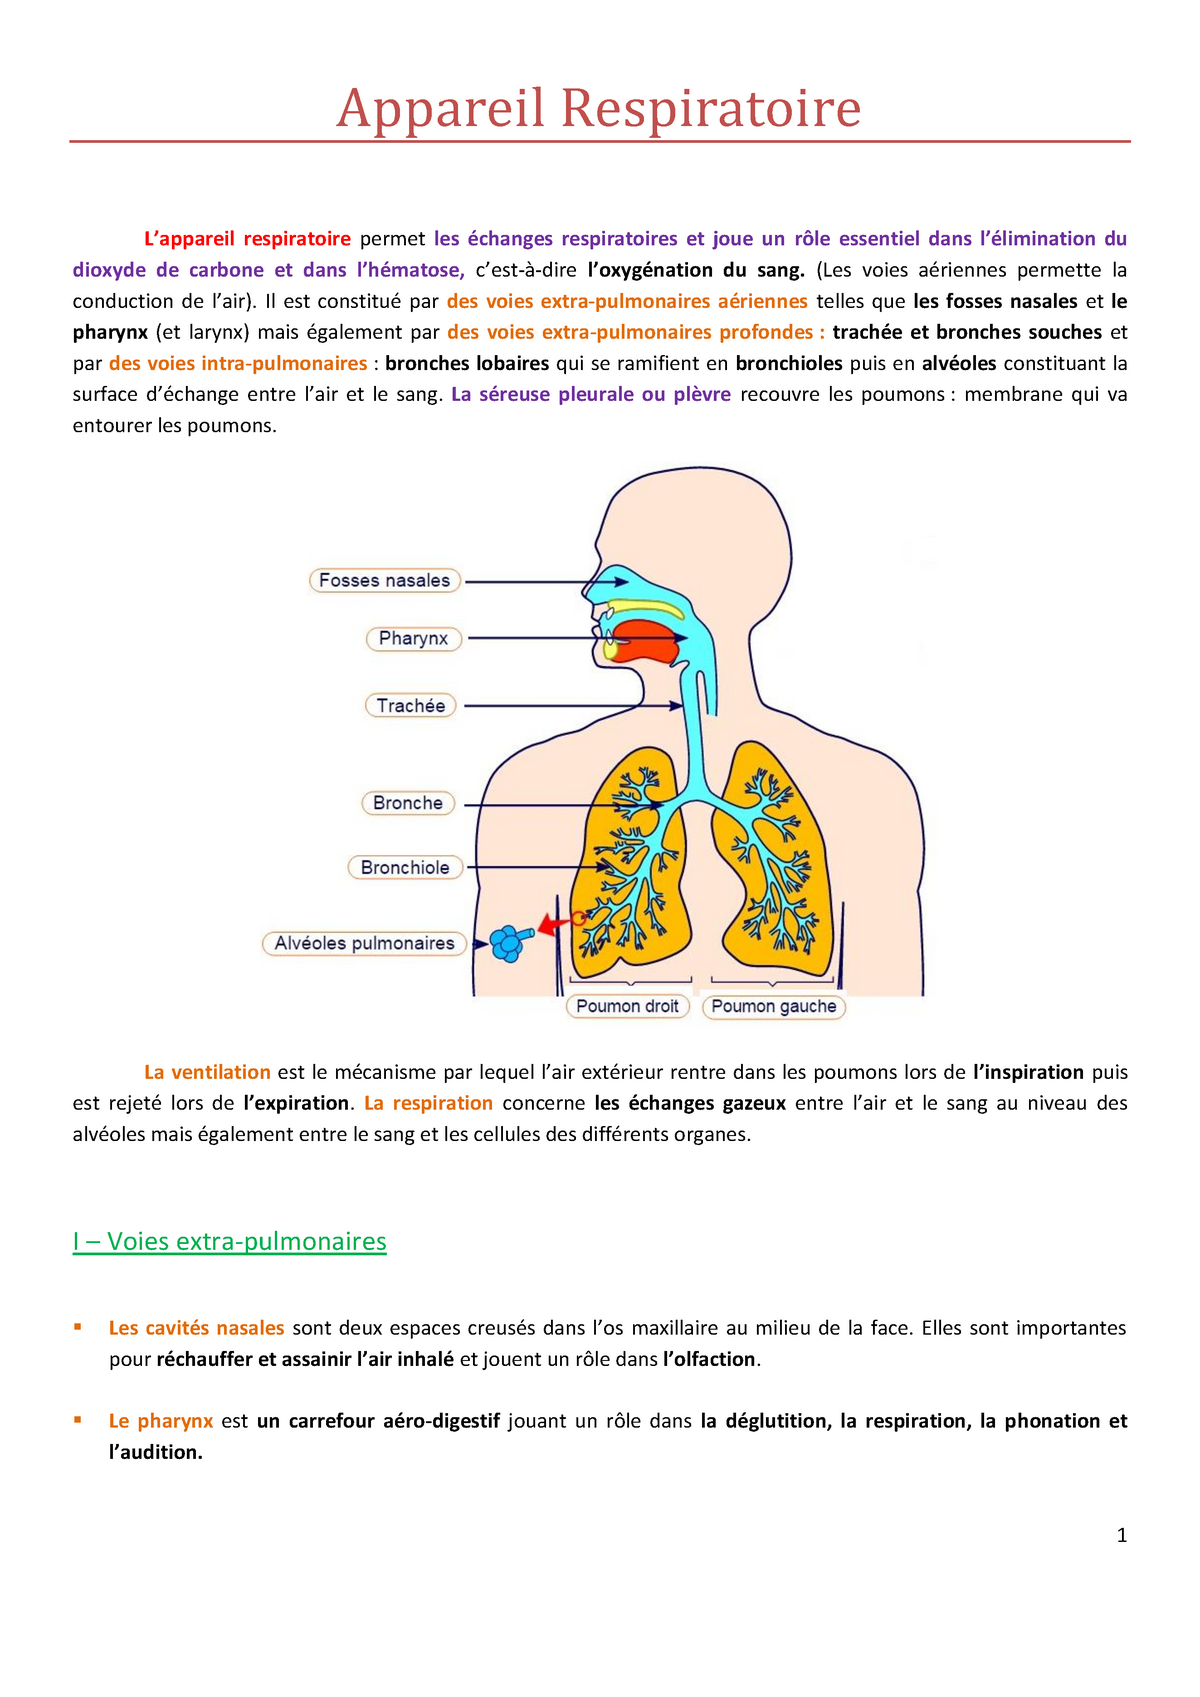 CCHST: Comment les matières particulaires passent-elles dans l'appareil  respiratoire?